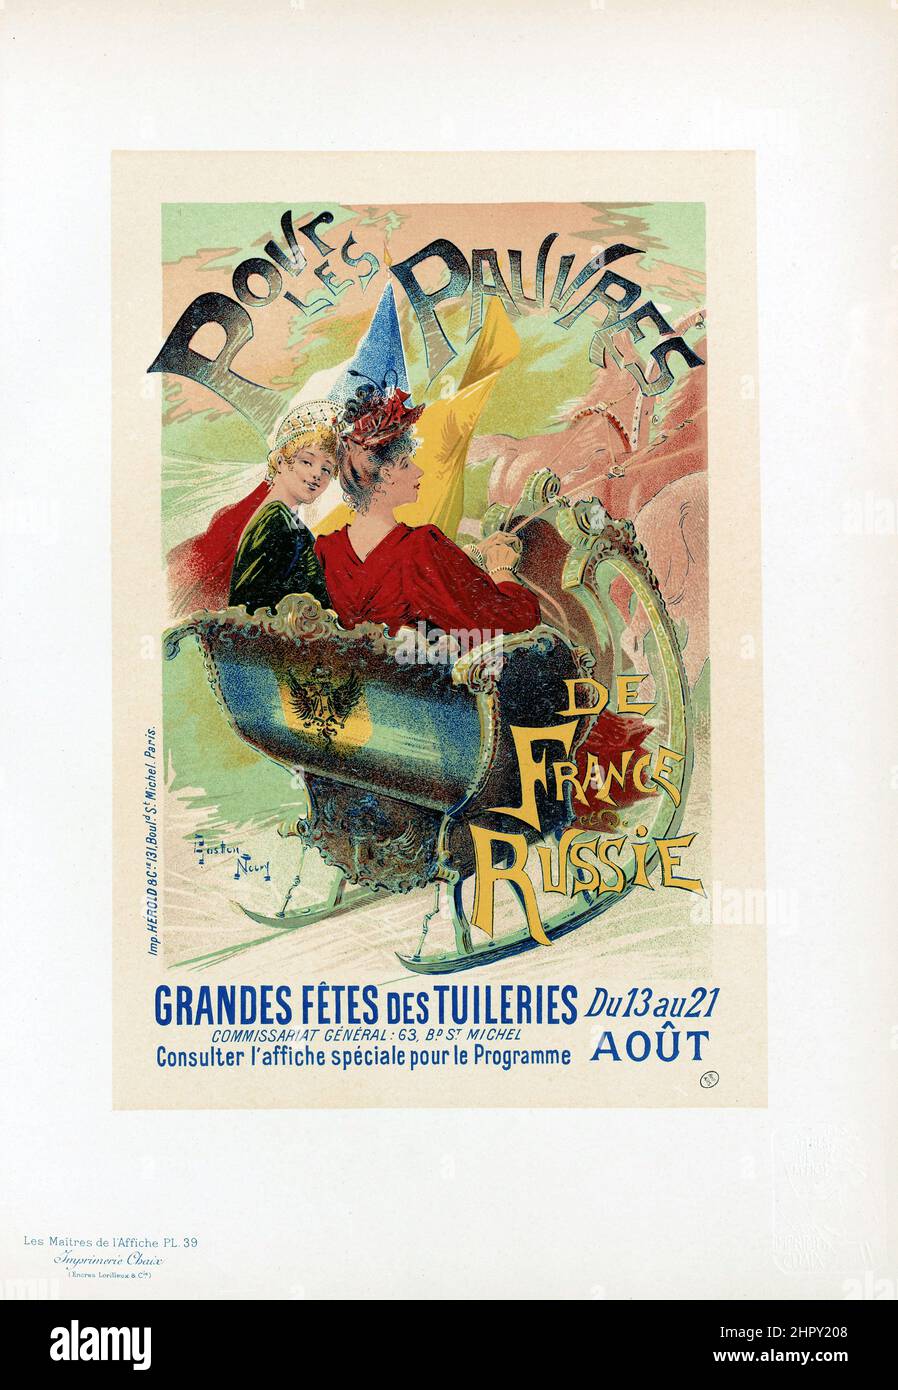 Maitres de l'affiche Vol 1 - Plate 39 - Gaston Noury - Pour le Pauvres de France et de Russie. 1896. Stock Photo